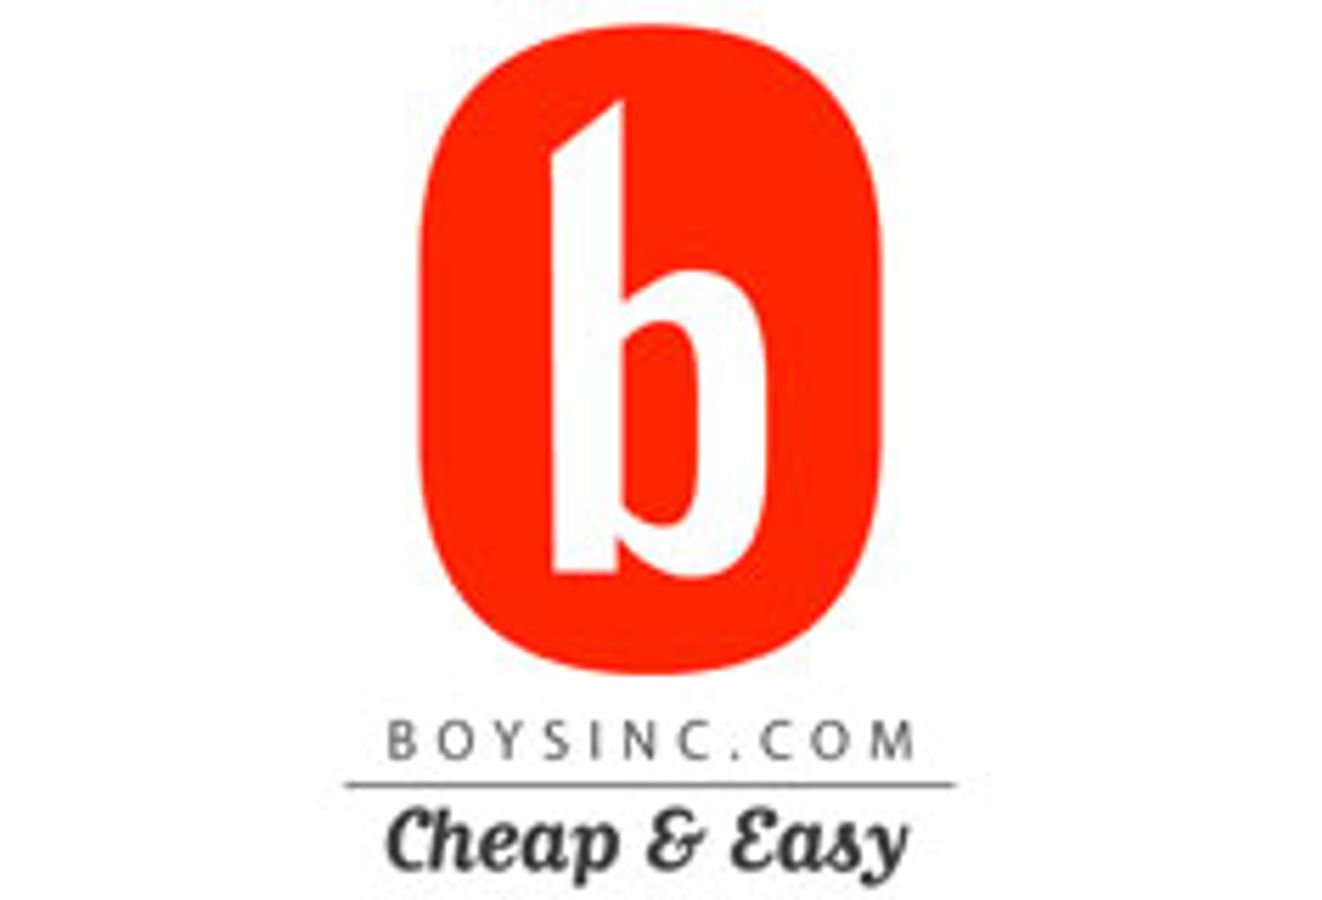 BoysInc.com